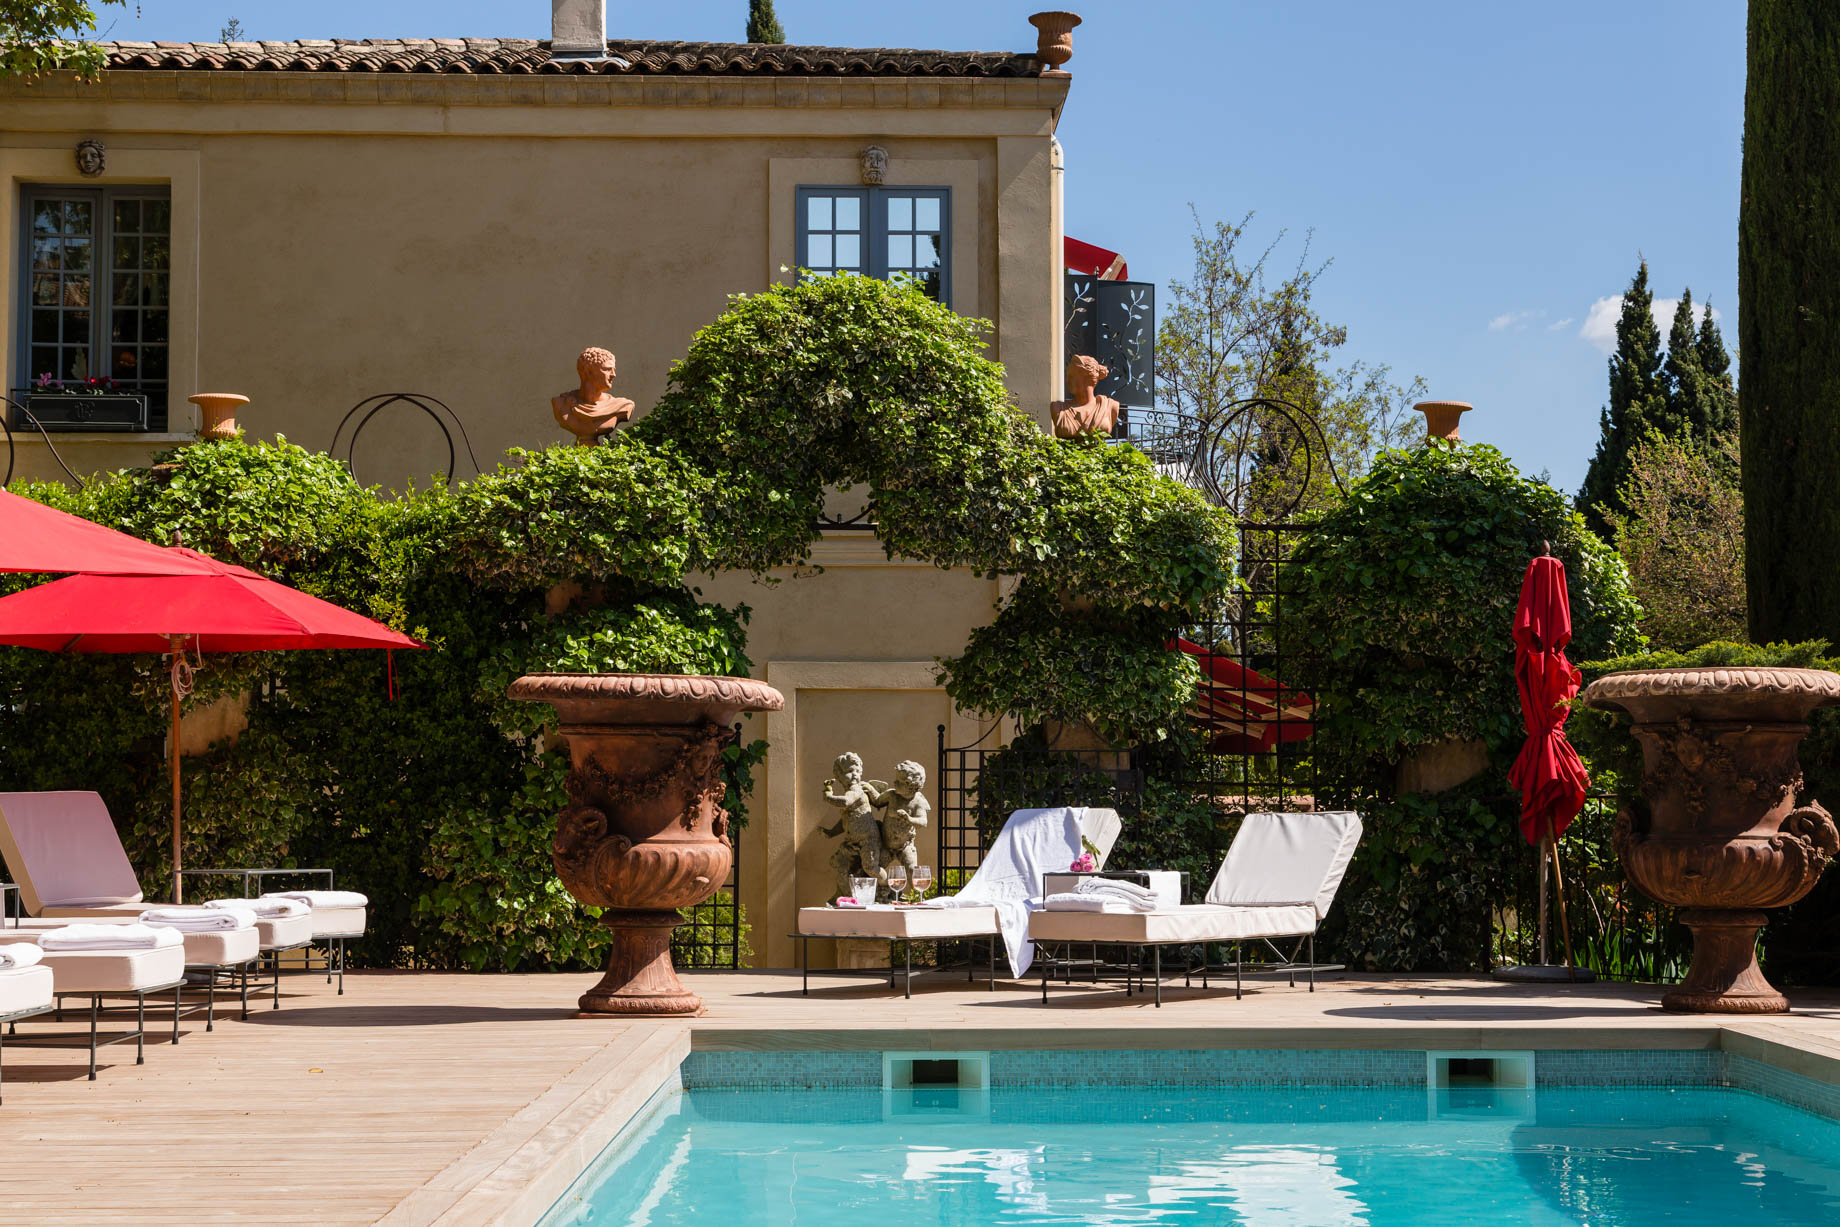 Villa Gallici Relais Châteaux Hotel - Aix-en-Provence, France - Pool Deck